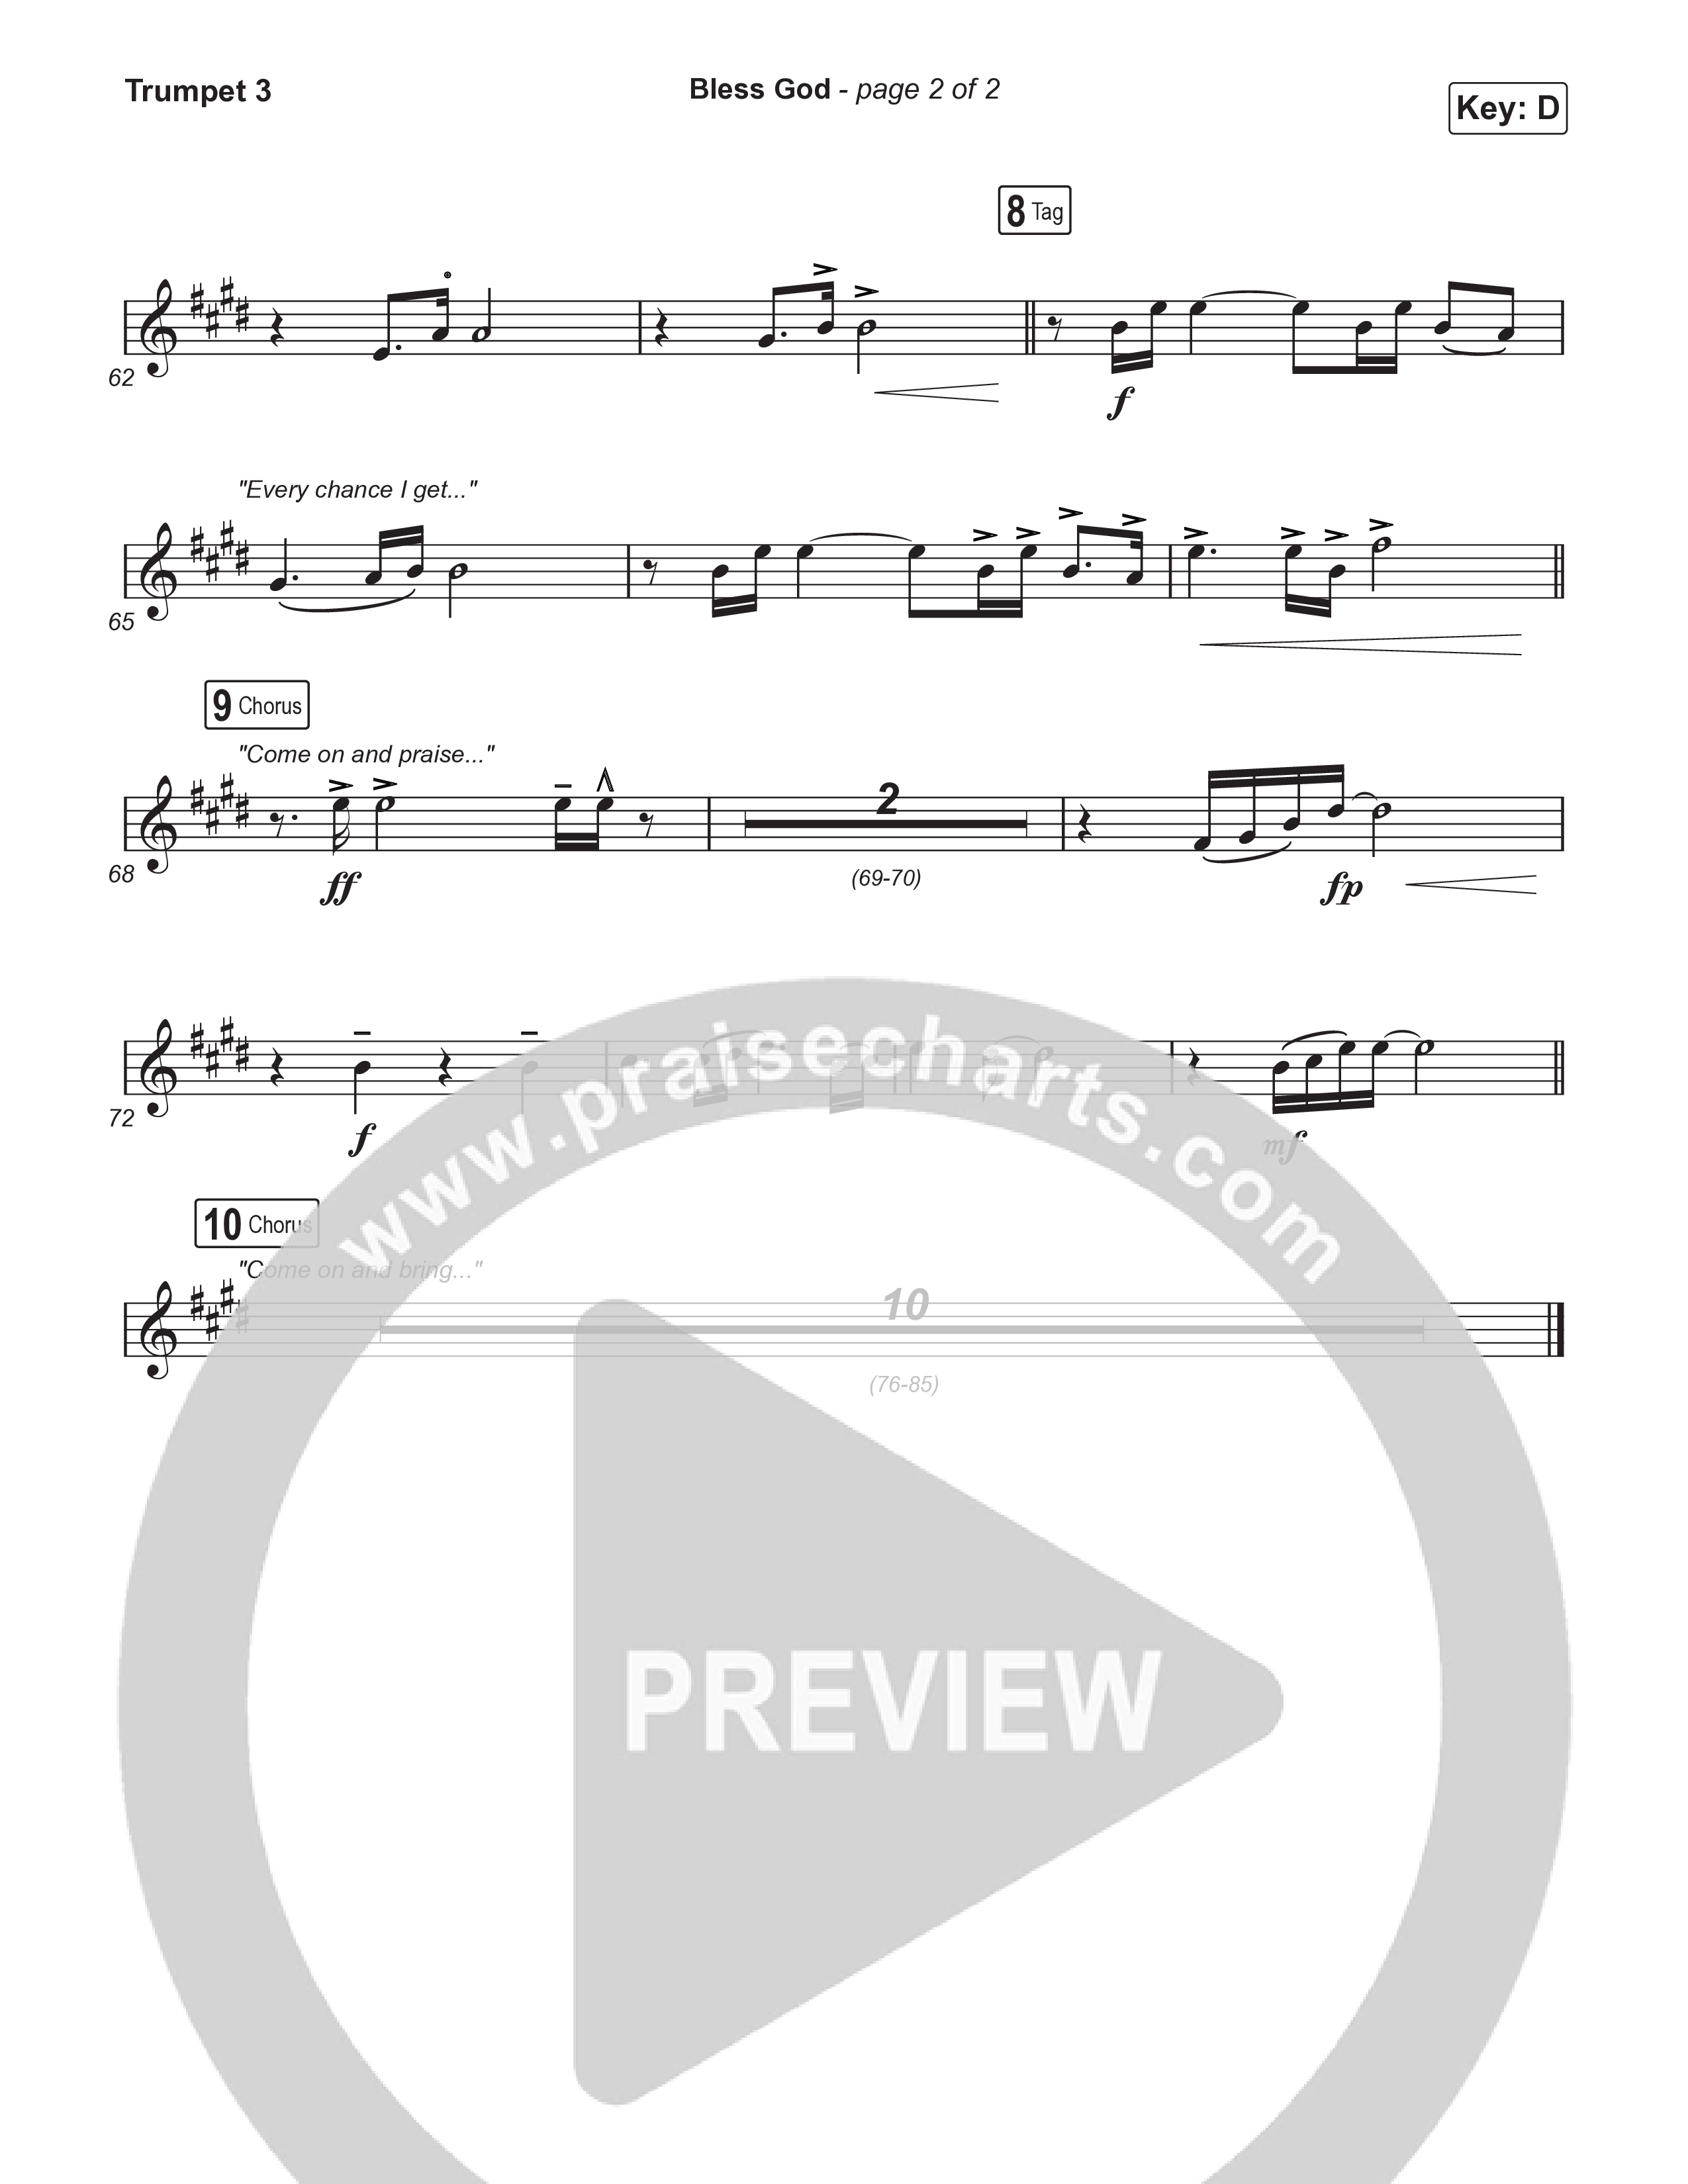 Bless God (Choral Anthem SATB) Trumpet 3 (Brooke Ligertwood / Arr. Luke Gambill)